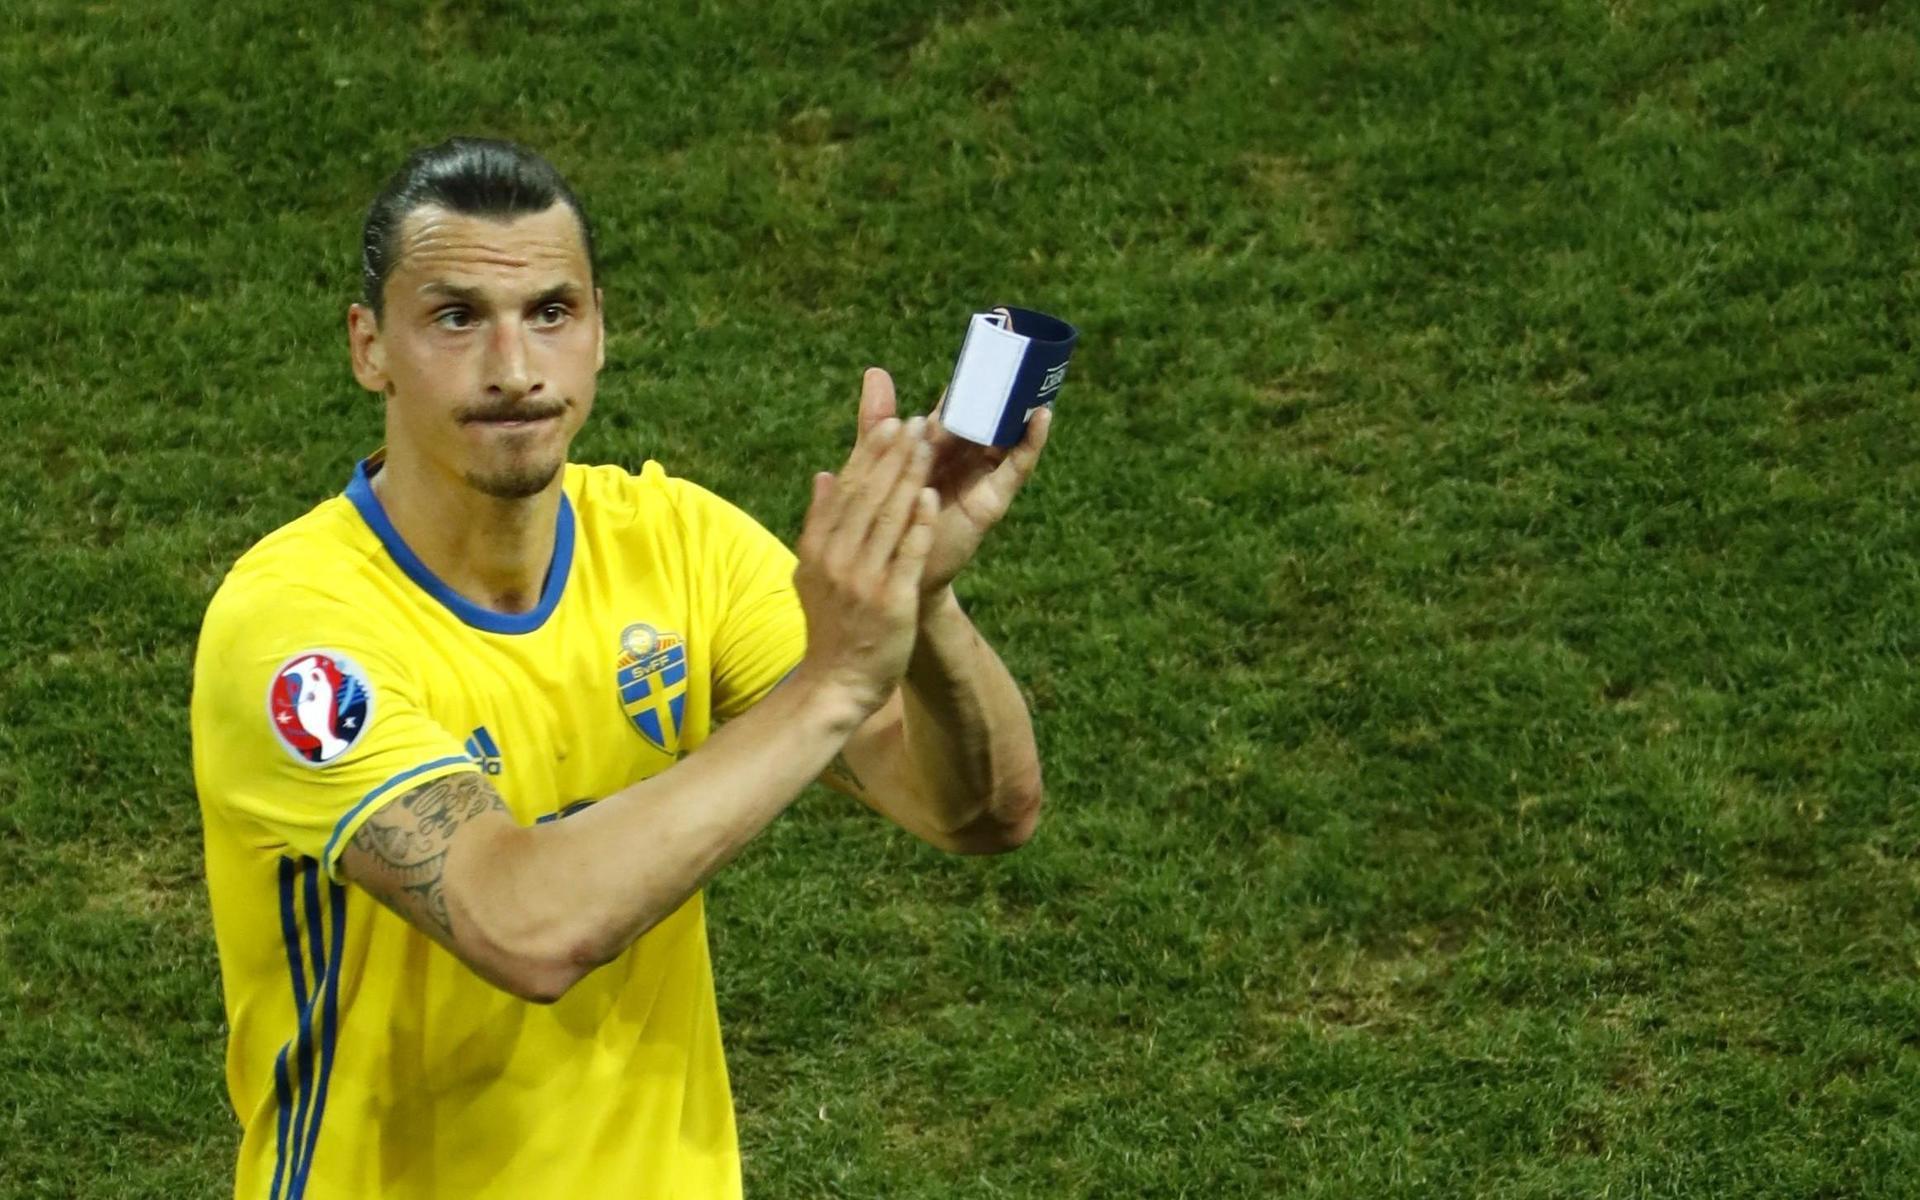 Efter EM i Frankrike 2016 valde Zlatan Ibrahimovic att tacka för sig i landslaget. Därefter har han flera gånger riktat kritik mot förbundskaptenen Janne Andersson.